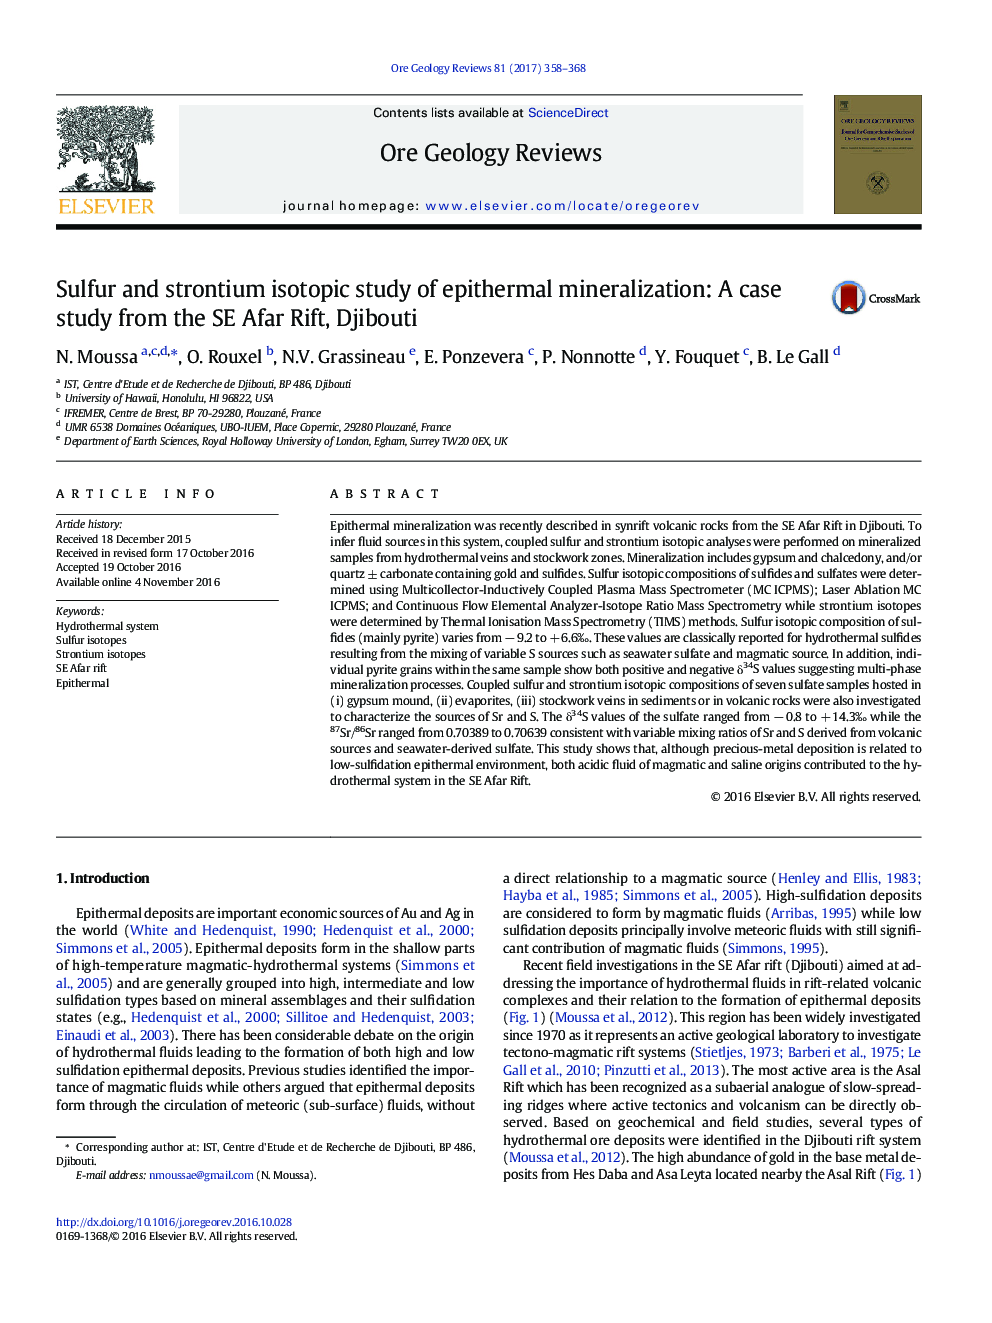 مطالعه ایزوتوپ های سولفور و استرانسیوم از کانی سازی اپیترمال: یک مطالعه موردی از جنوب شرق آفریقا، جیبوتی